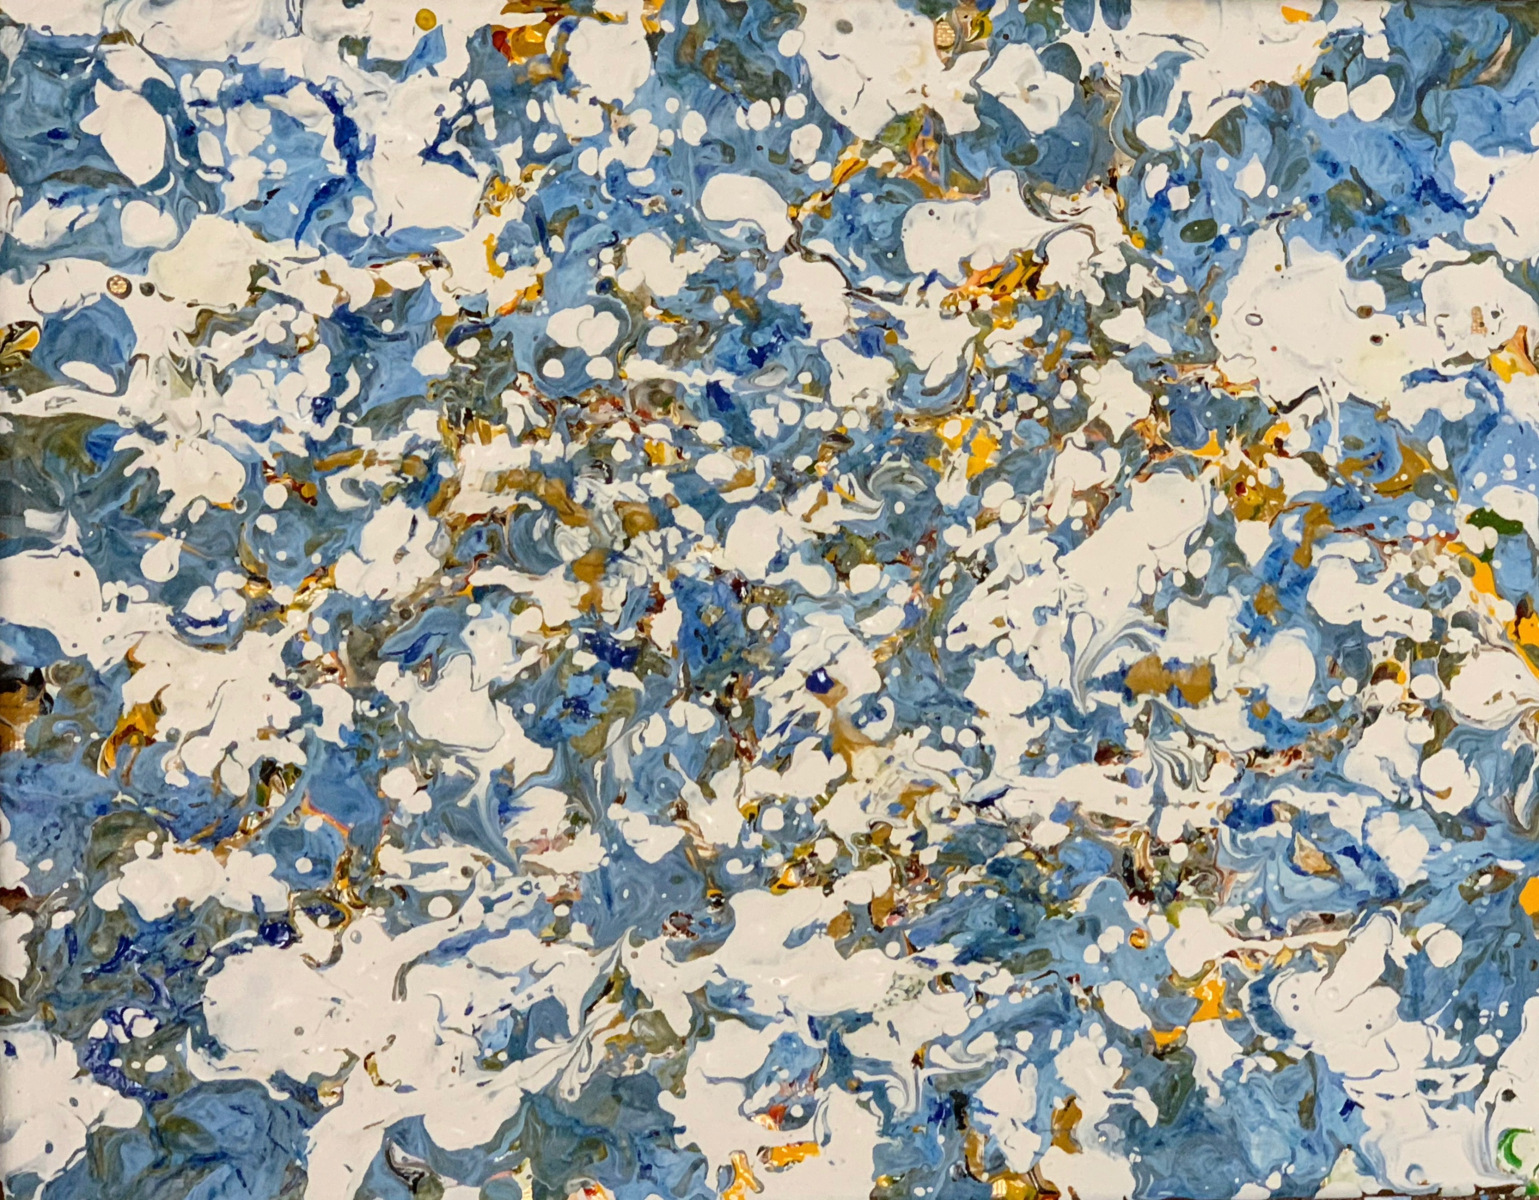 Pebbles#4, 11x9" acrylic on canvas$900